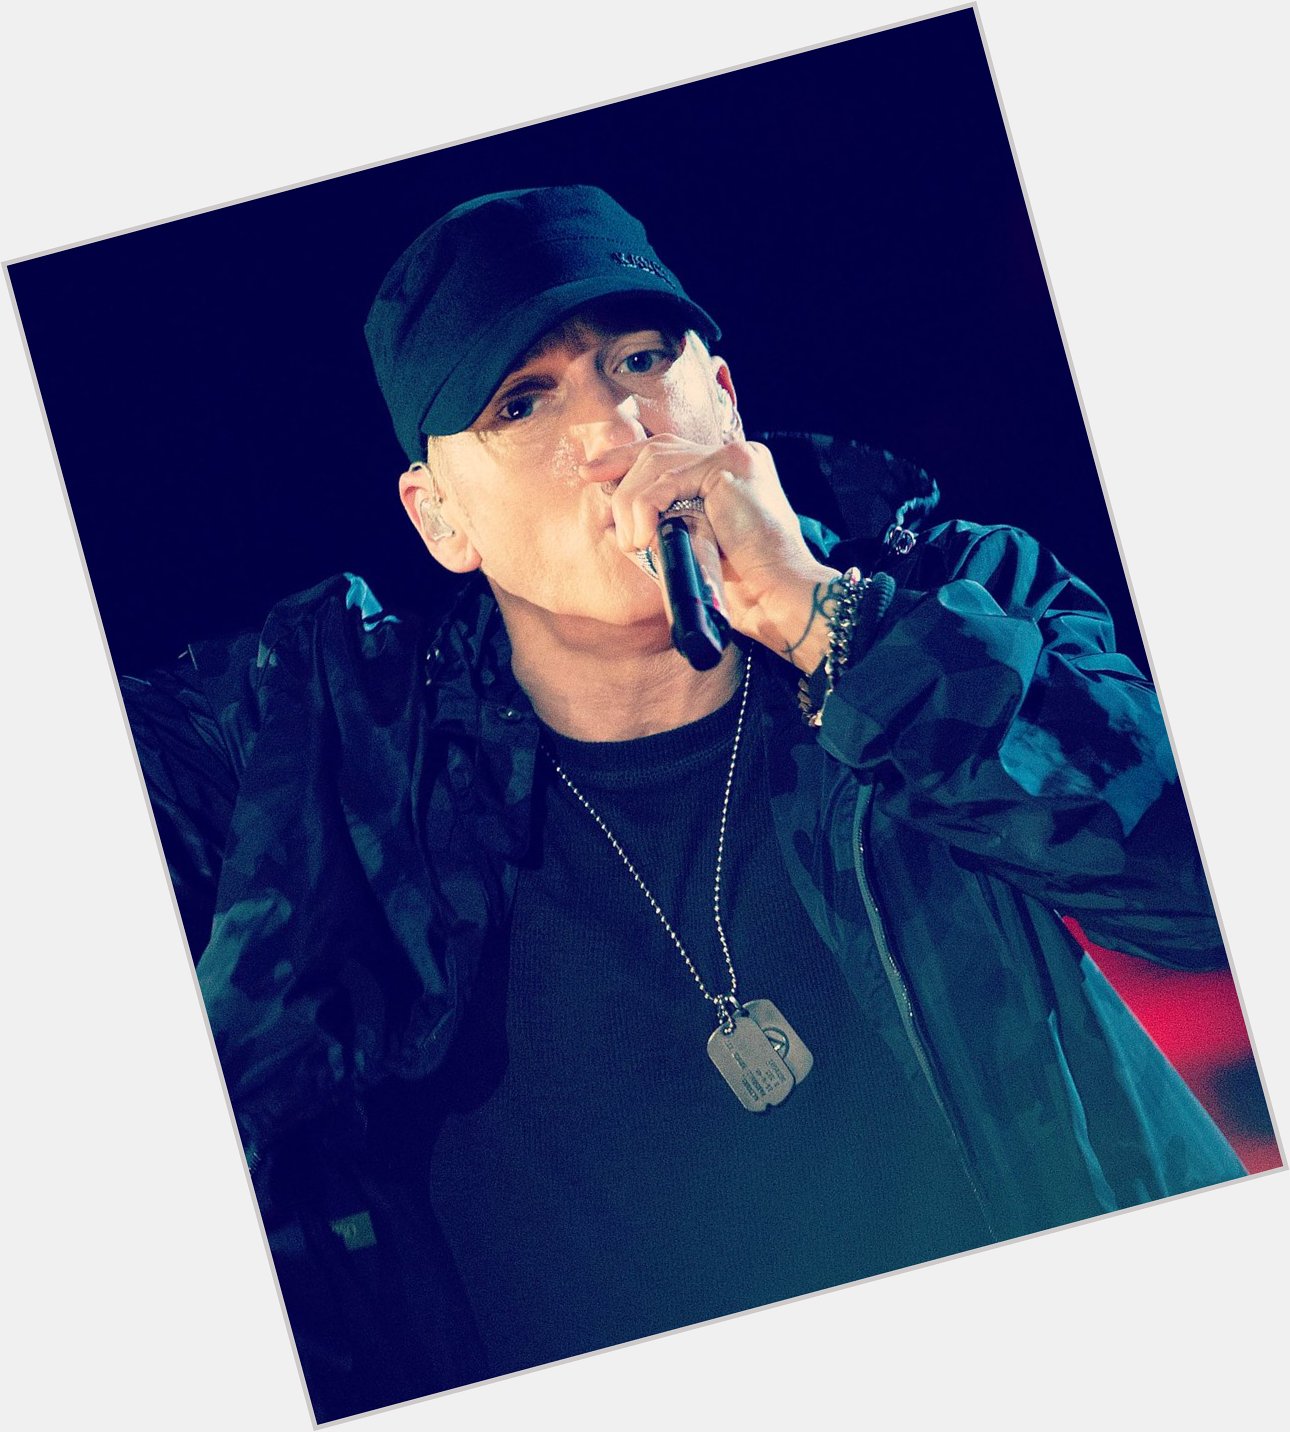 From yesterday, happy 49th birthday to Eminem! 